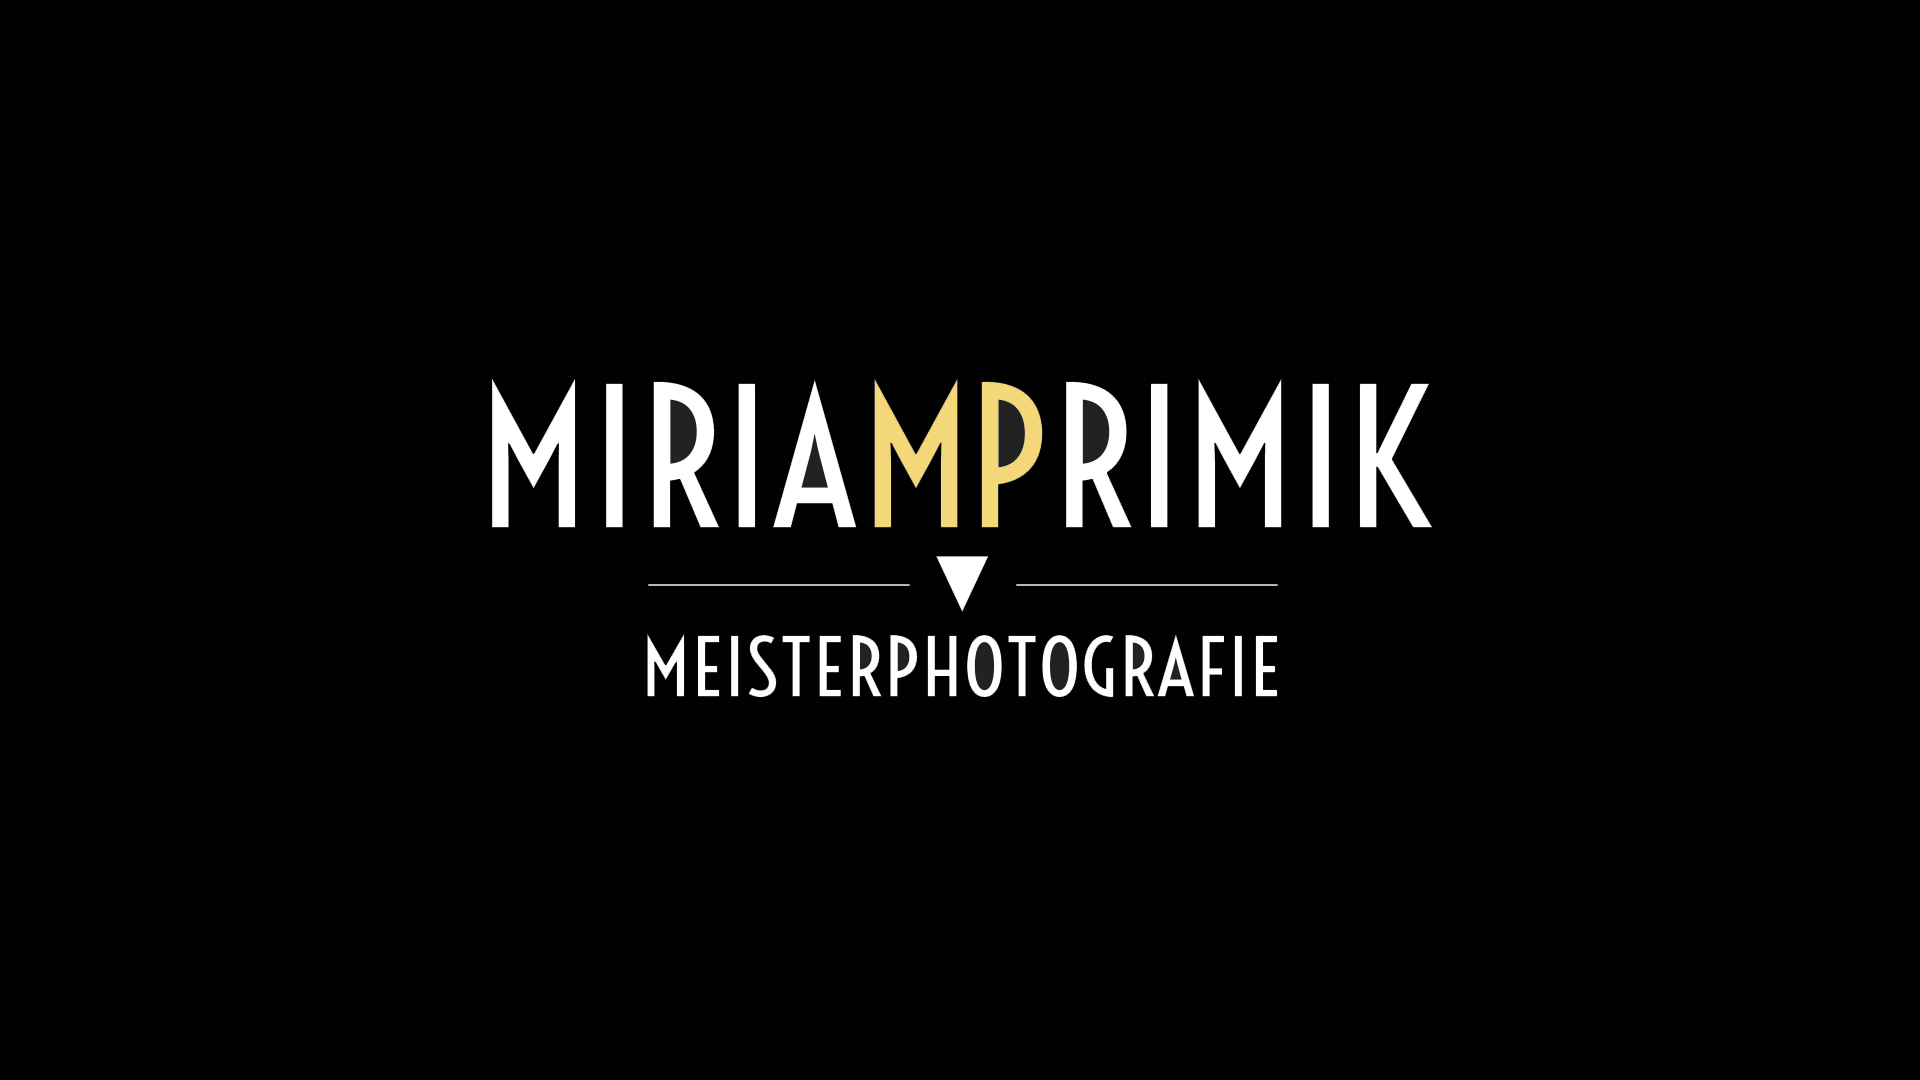 (c) Miriamprimik.com